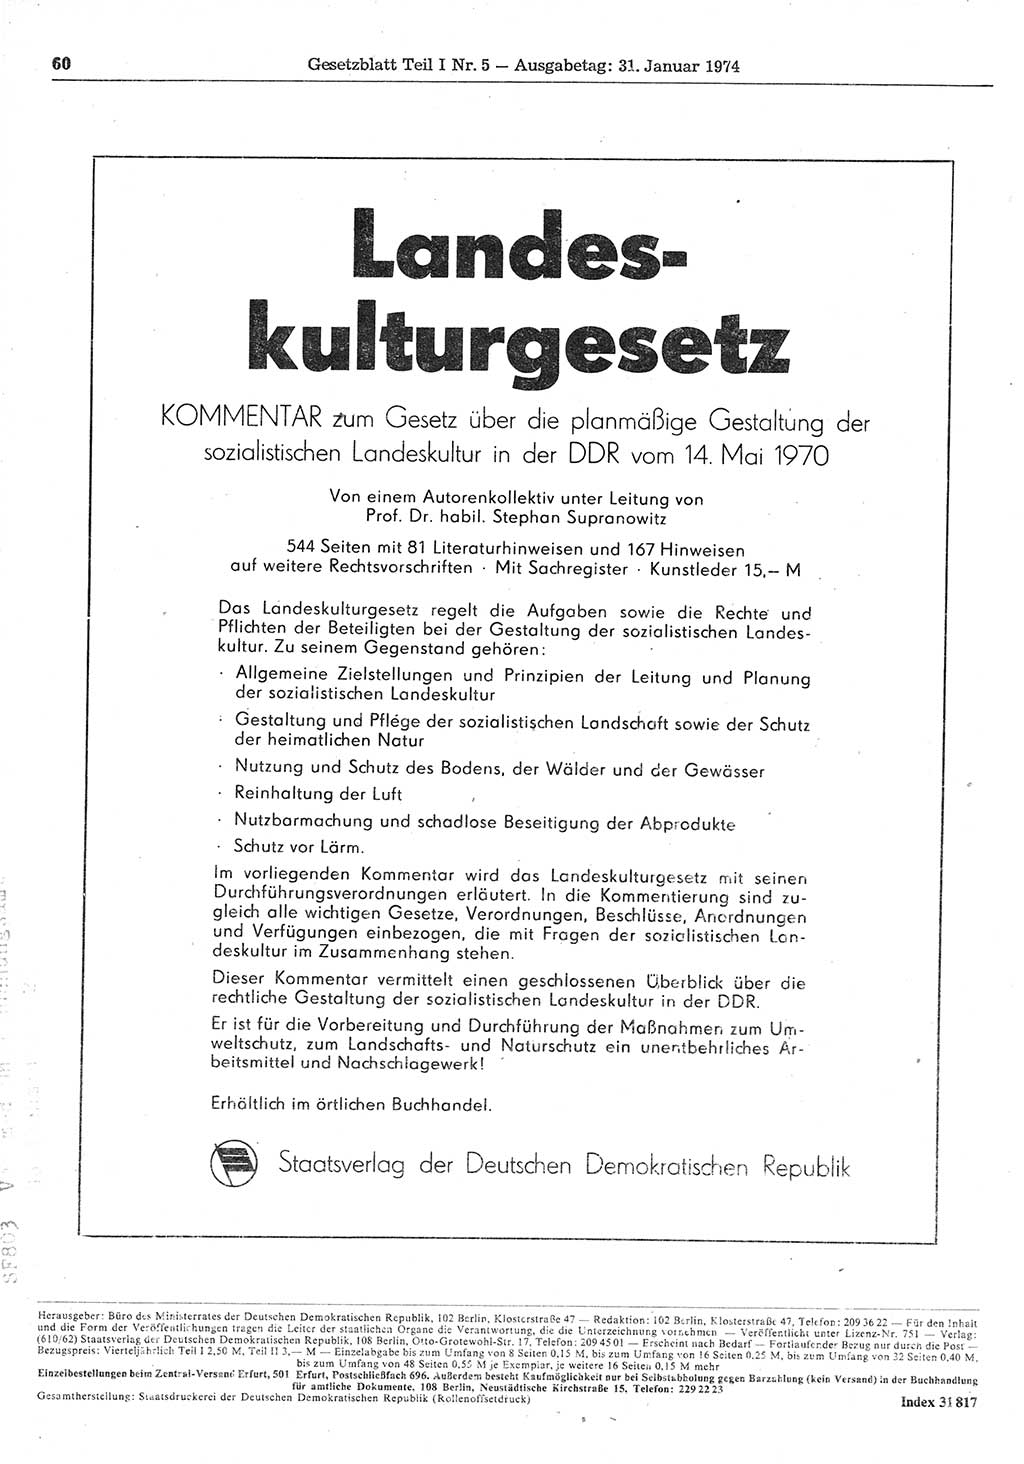 Gesetzblatt (GBl.) der Deutschen Demokratischen Republik (DDR) Teil Ⅰ 1974, Seite 60 (GBl. DDR Ⅰ 1974, S. 60)